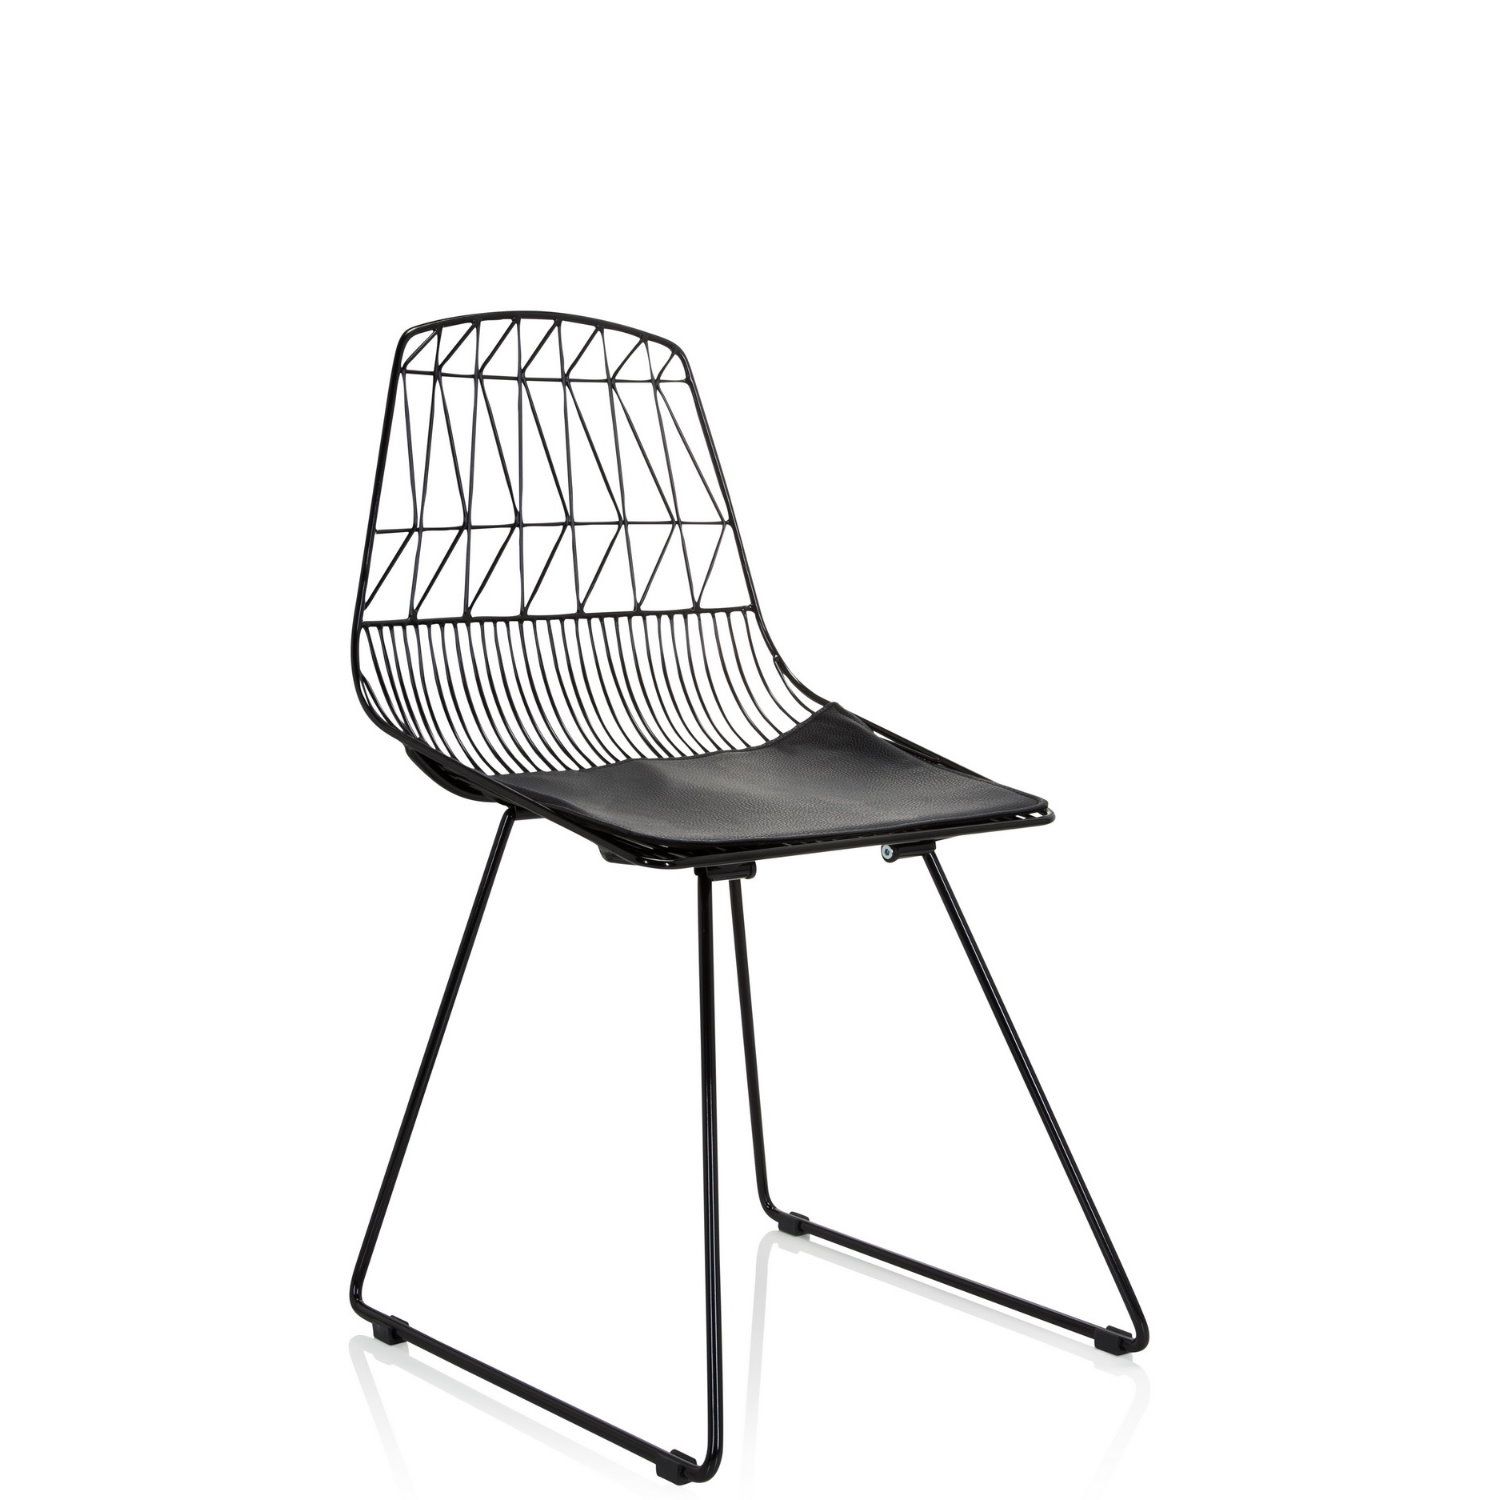 Metall-Stuhl / Living Stuhl WIREA mit Sitzkissen schwarz hjh OFFICE